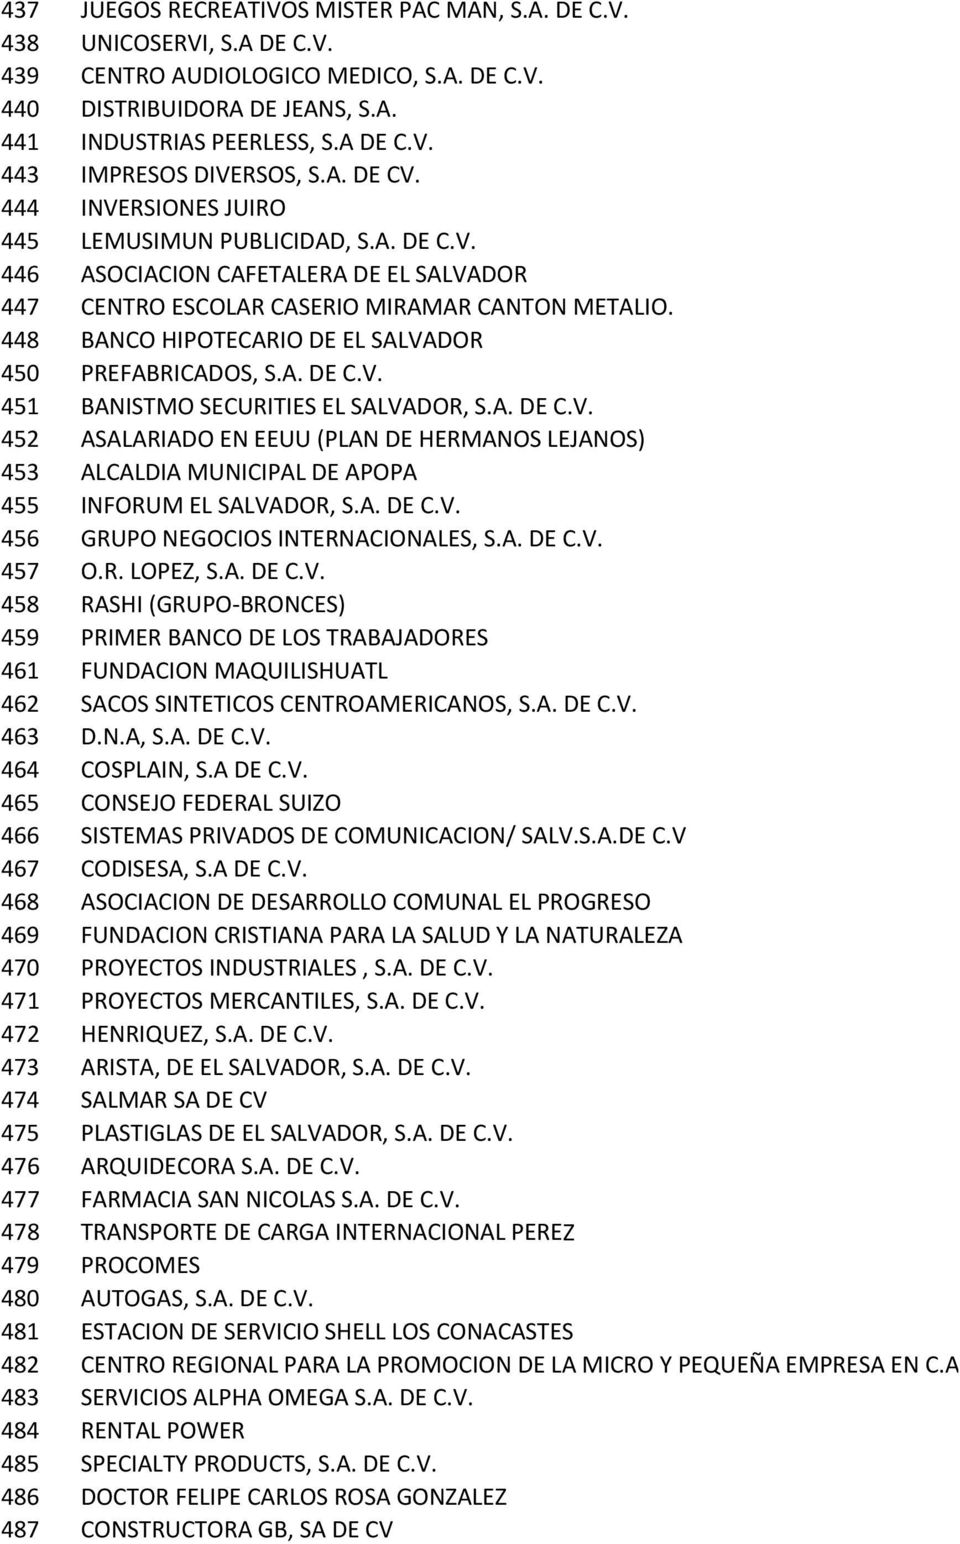 448 BANCO HIPOTECARIO DE EL SALVADOR 450 PREFABRICADOS, S.A. DE C.V. 451 BANISTMO SECURITIES EL SALVADOR, S.A. DE C.V. 452 ASALARIADO EN EEUU (PLAN DE HERMANOS LEJANOS) 453 ALCALDIA MUNICIPAL DE APOPA 455 INFORUM EL SALVADOR, S.